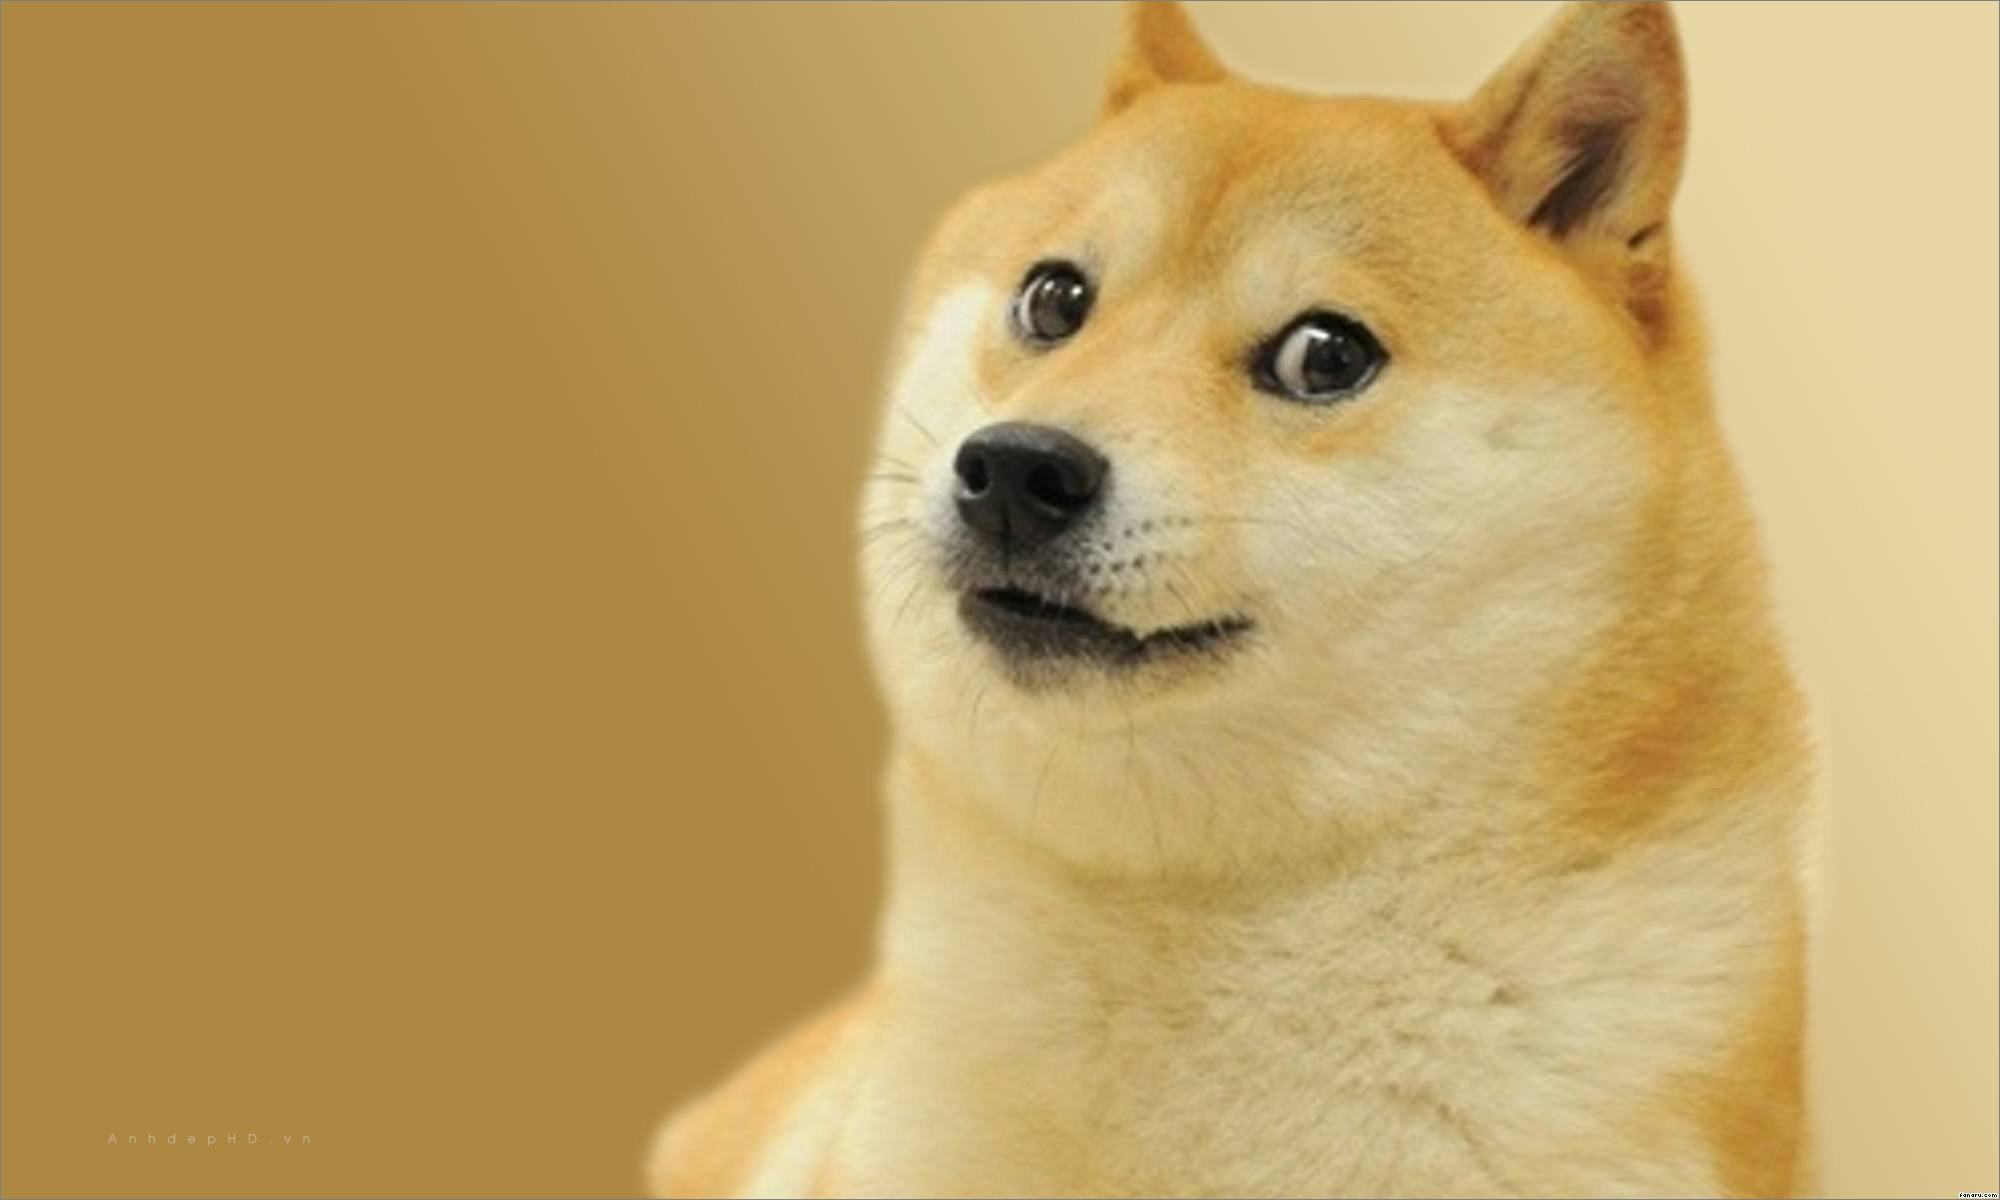 Chó Shiba: Đây là loài chó Shiba đáng yêu nhất mà bạn từng thấy. Với tình yêu đối với chủ và nét mặt kính đẹp như tranh, bạn sẽ không thể nhịn được cười khi xem bức ảnh này.